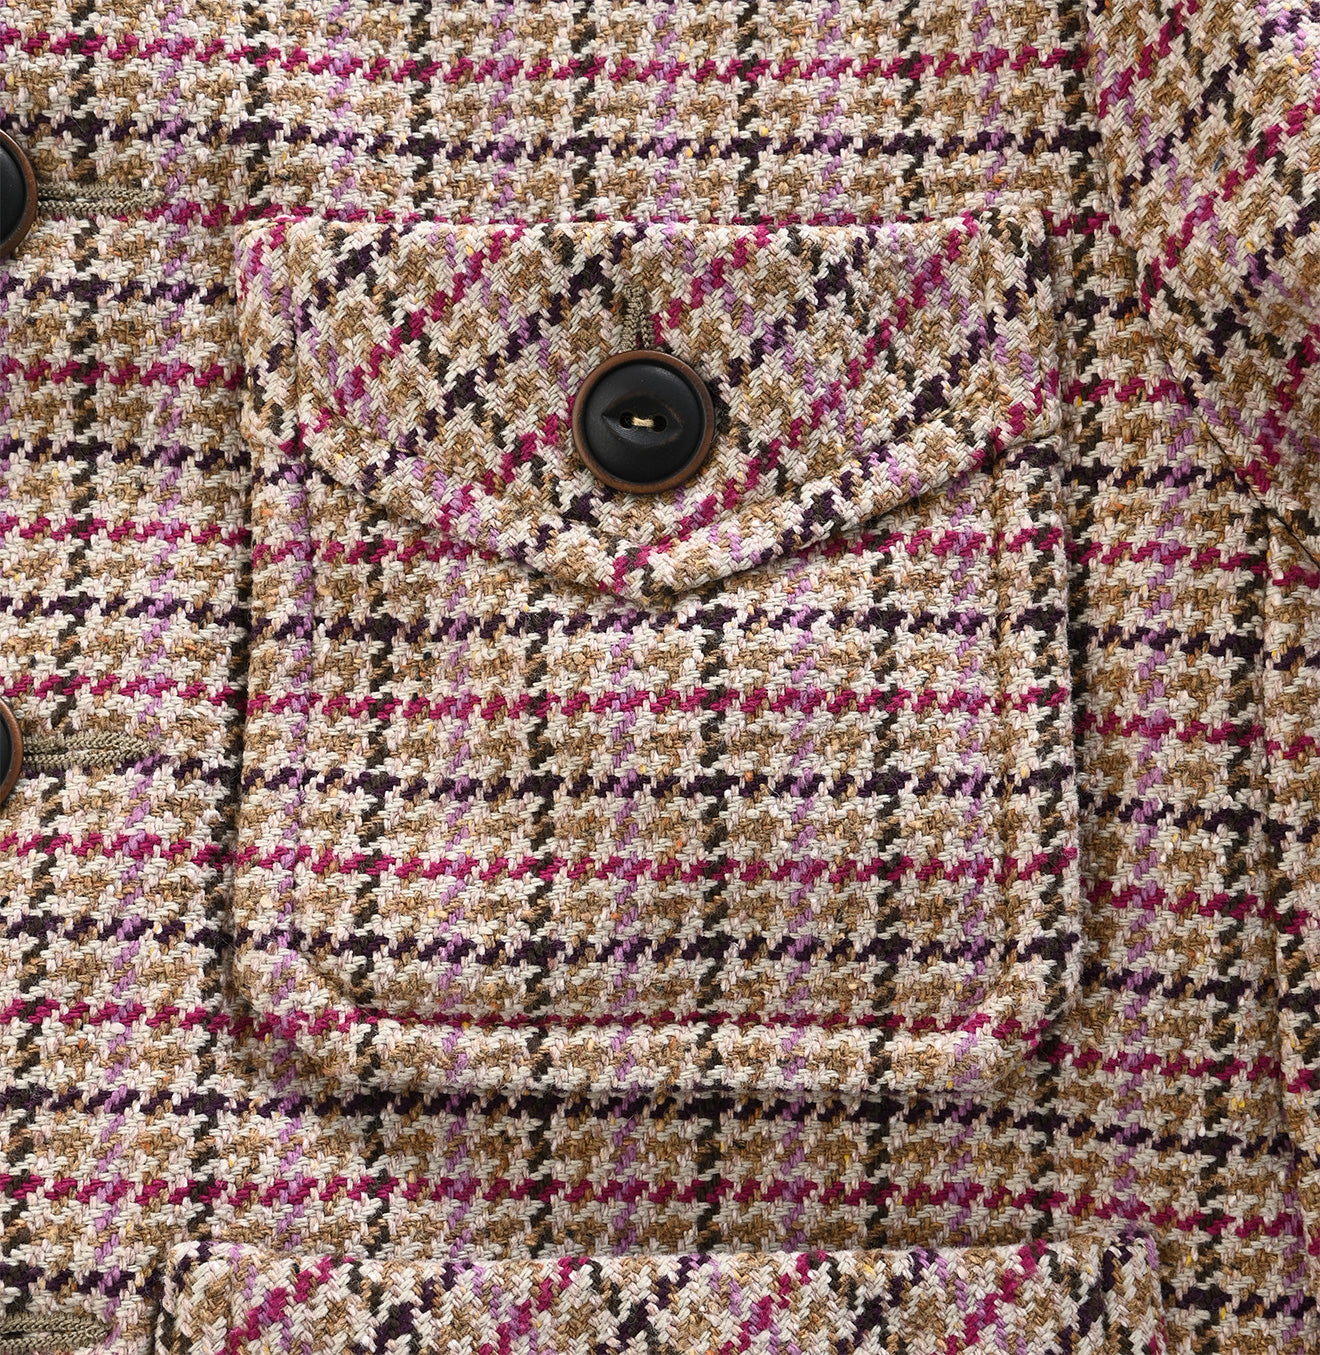 Cotton Tweed Annie Jacket